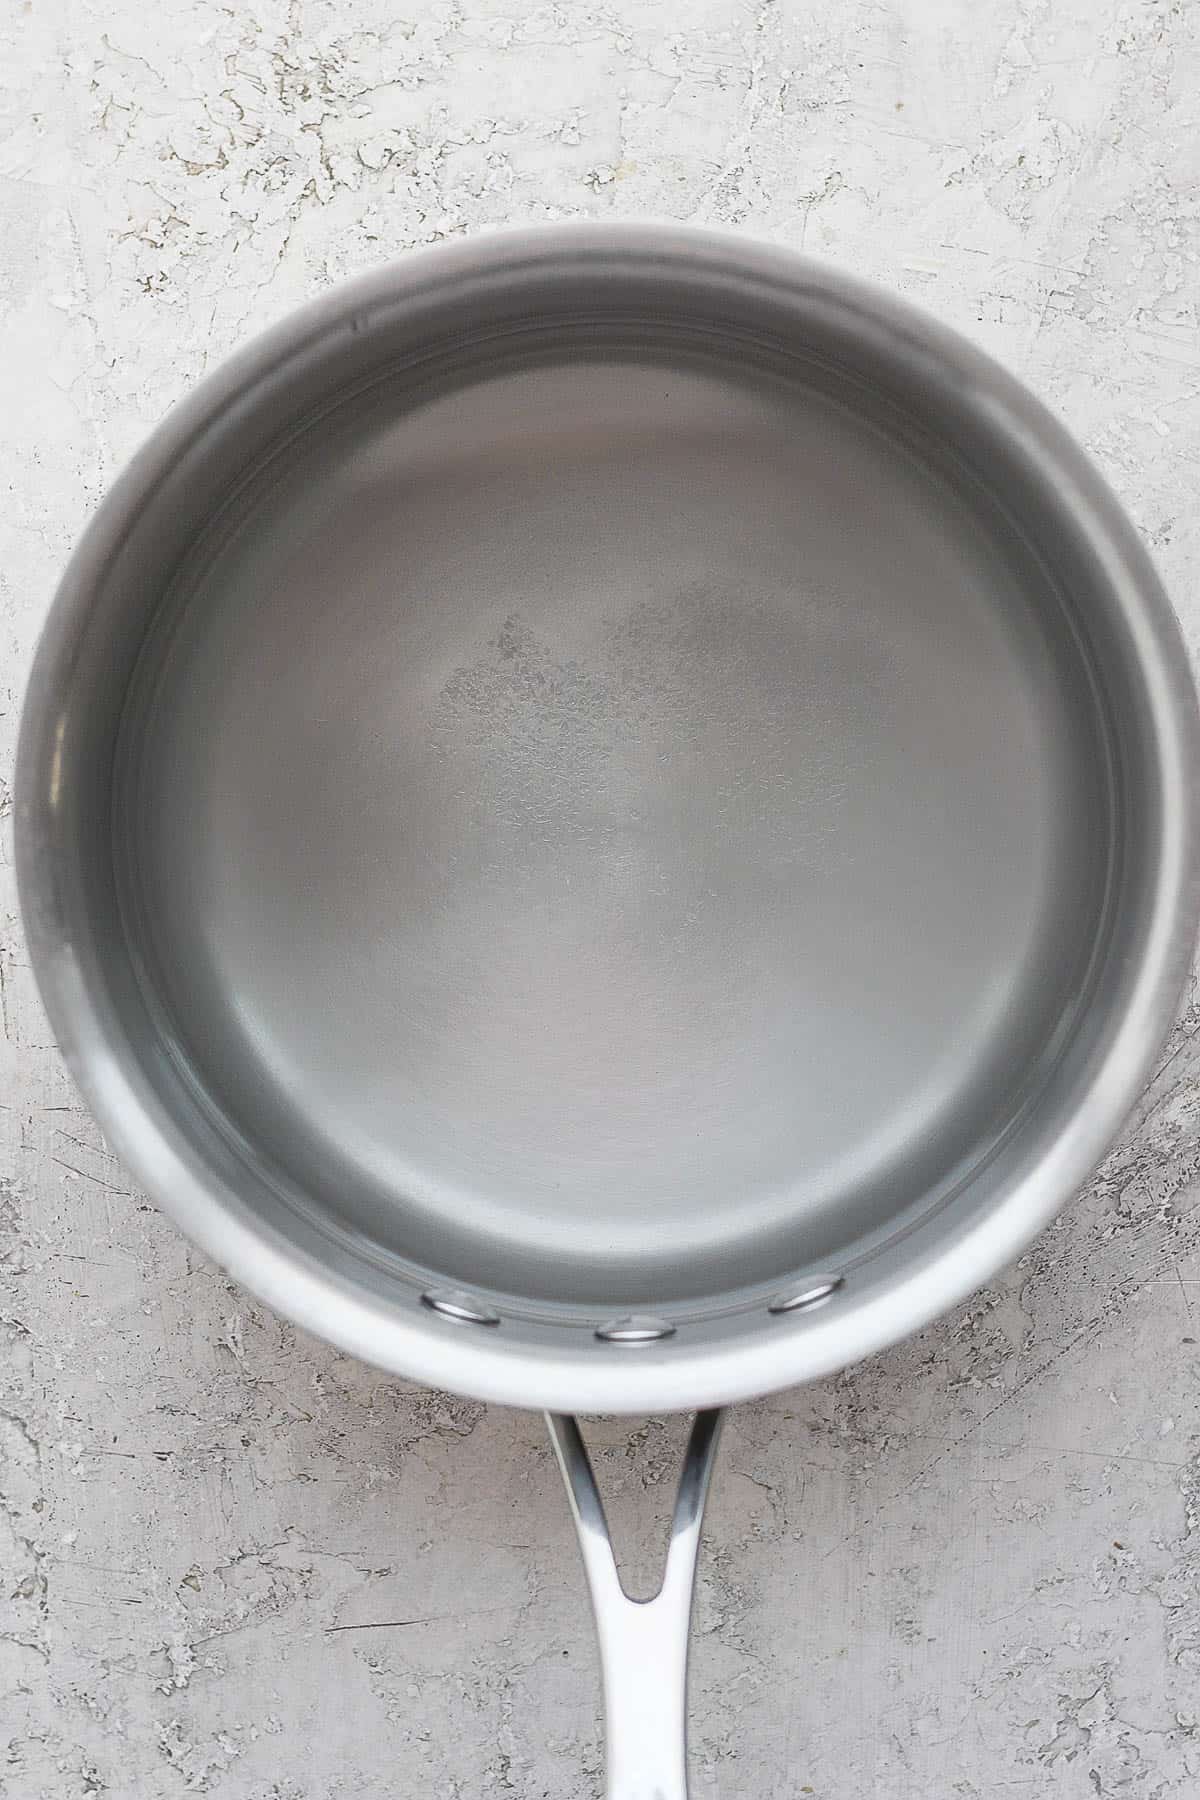 Water and salt in a medium sauce pan.